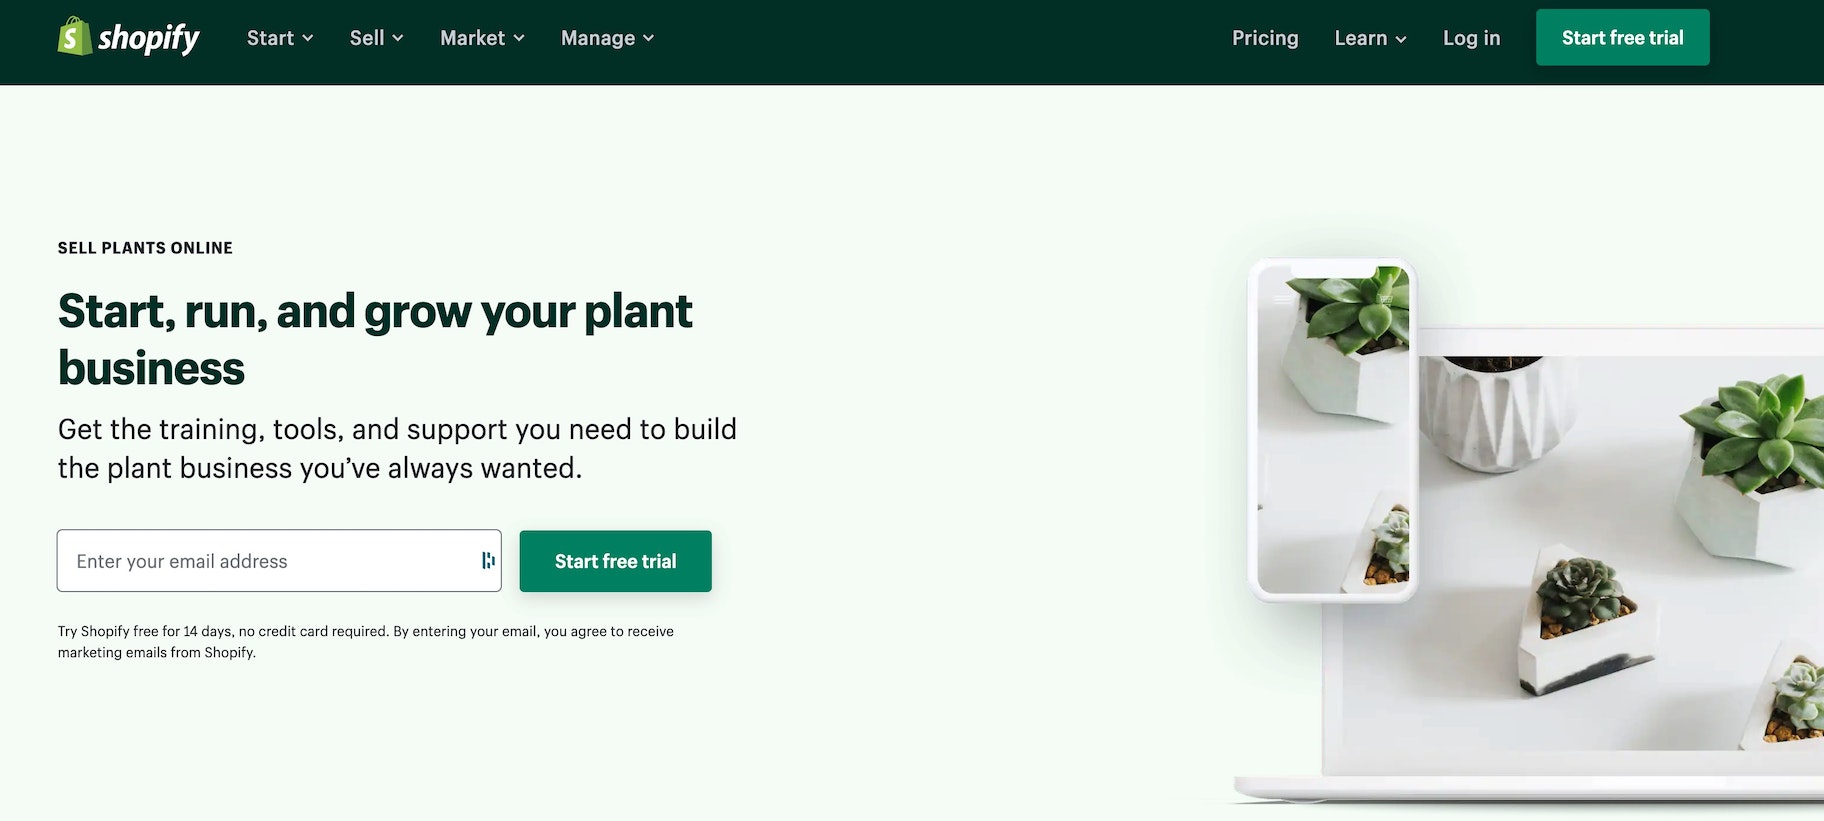 construye una tienda de plantas en línea con Shopify